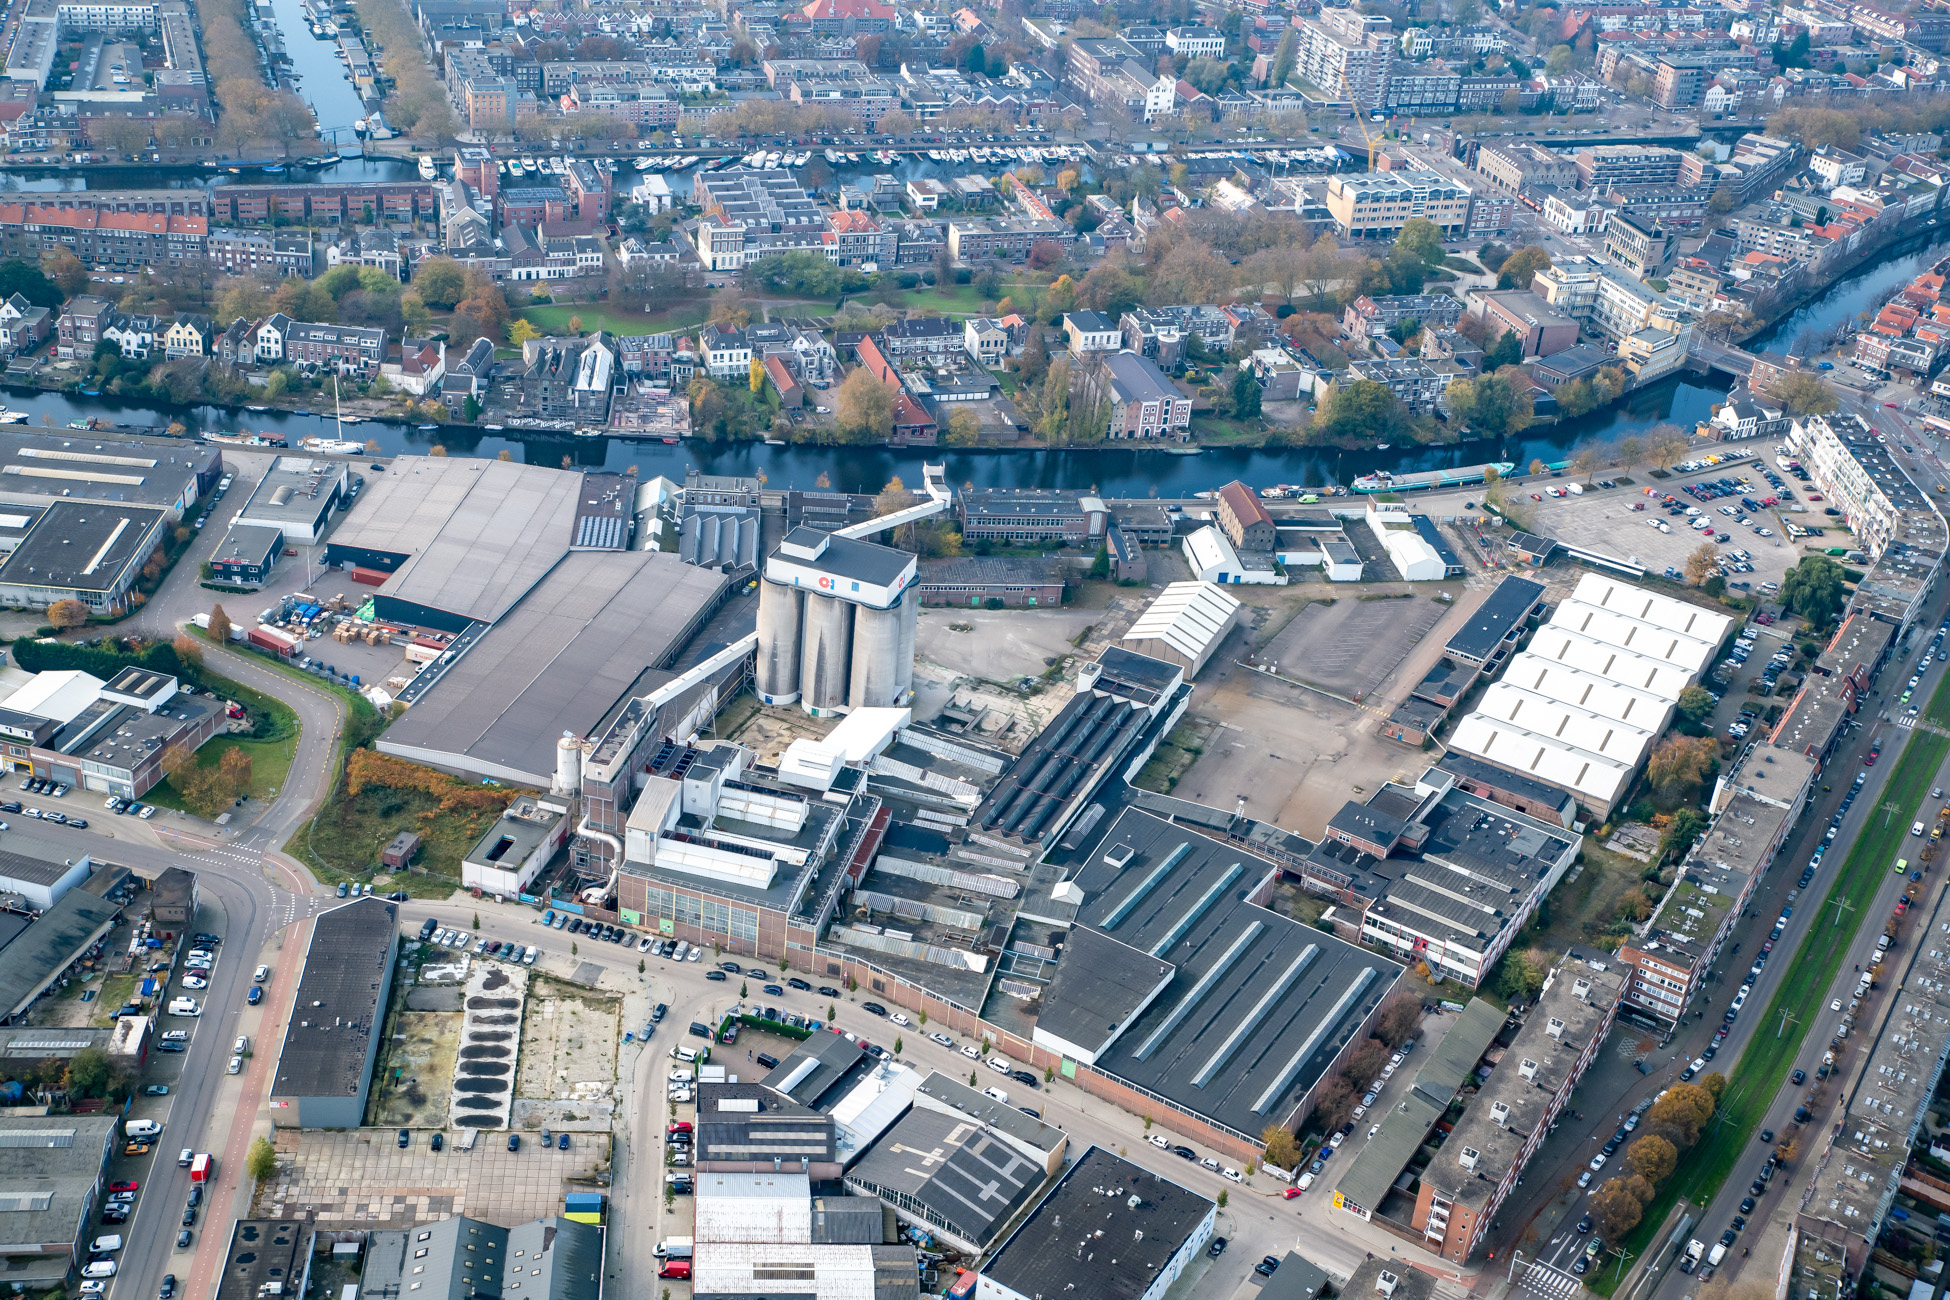 "Luchtfoto van het terrein van de Glasfabriek"